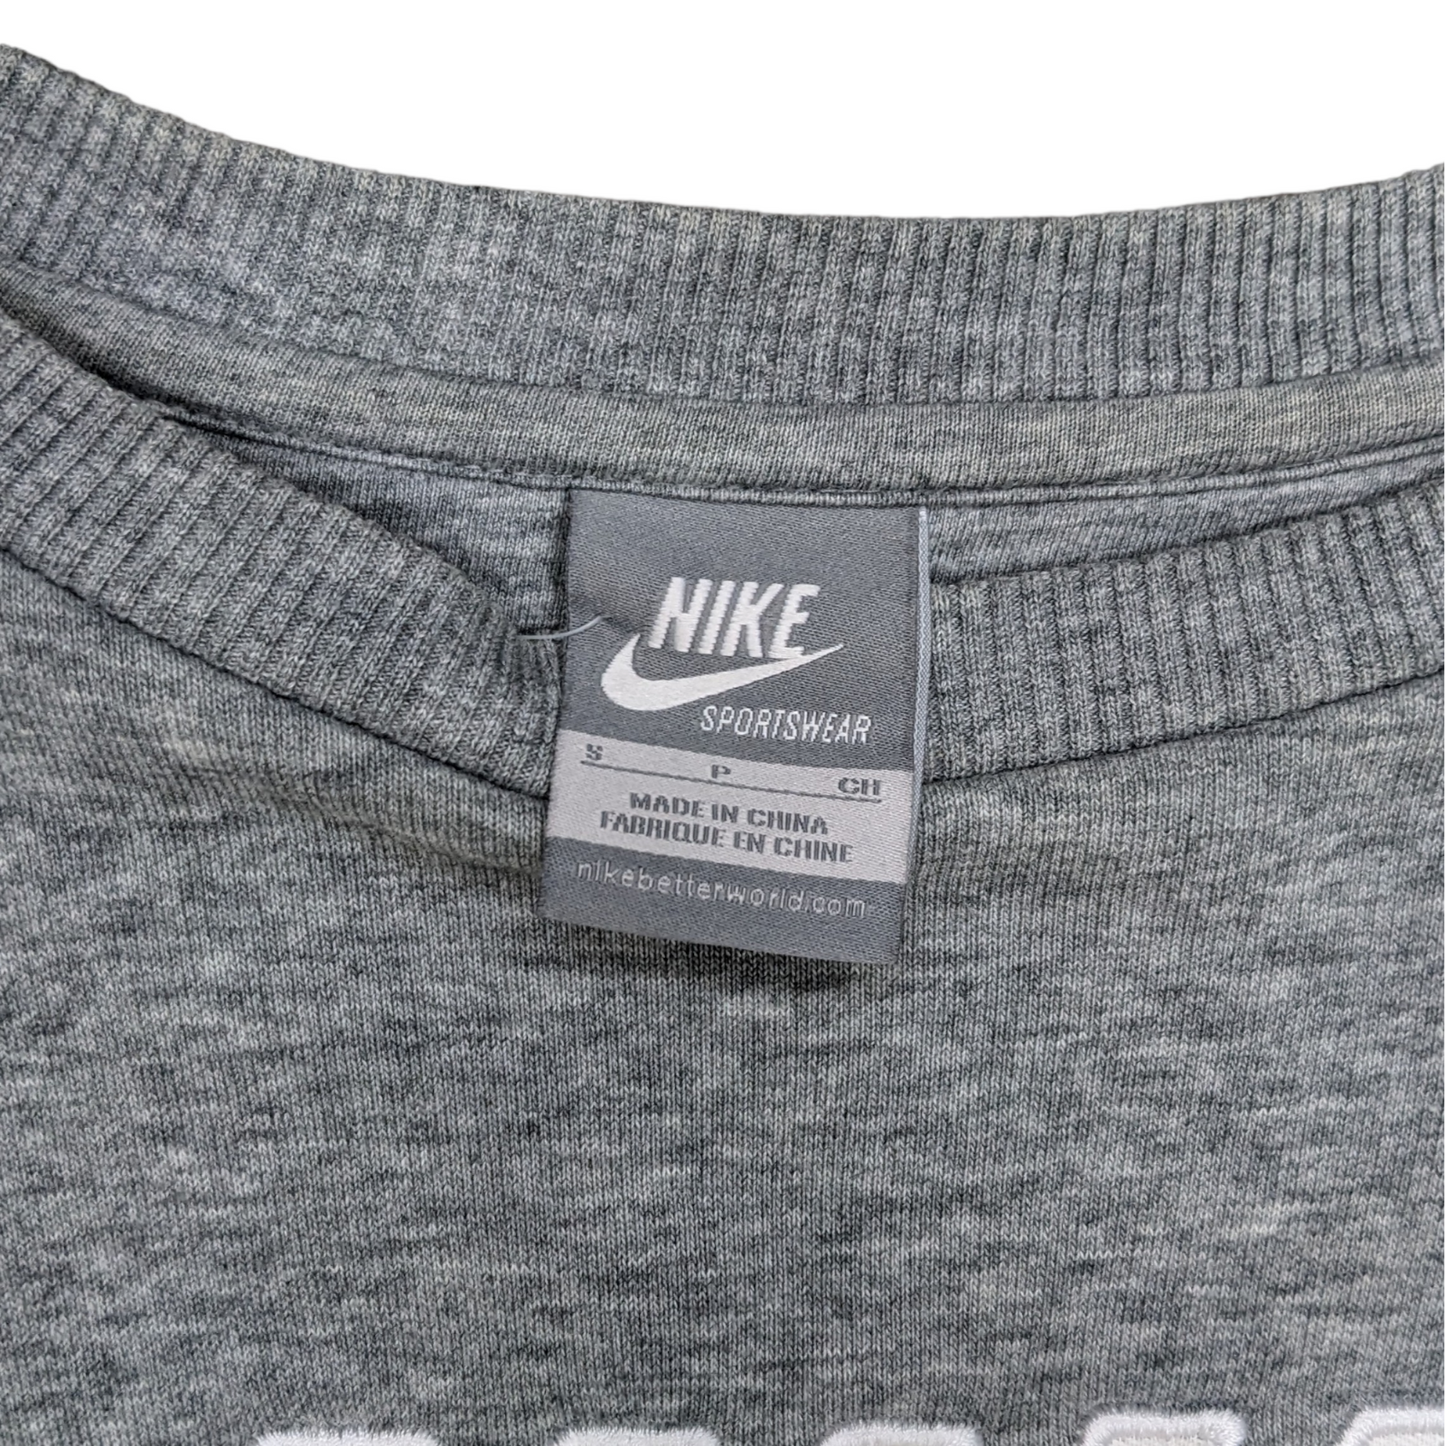 00s Nike Sweatshirt Size S